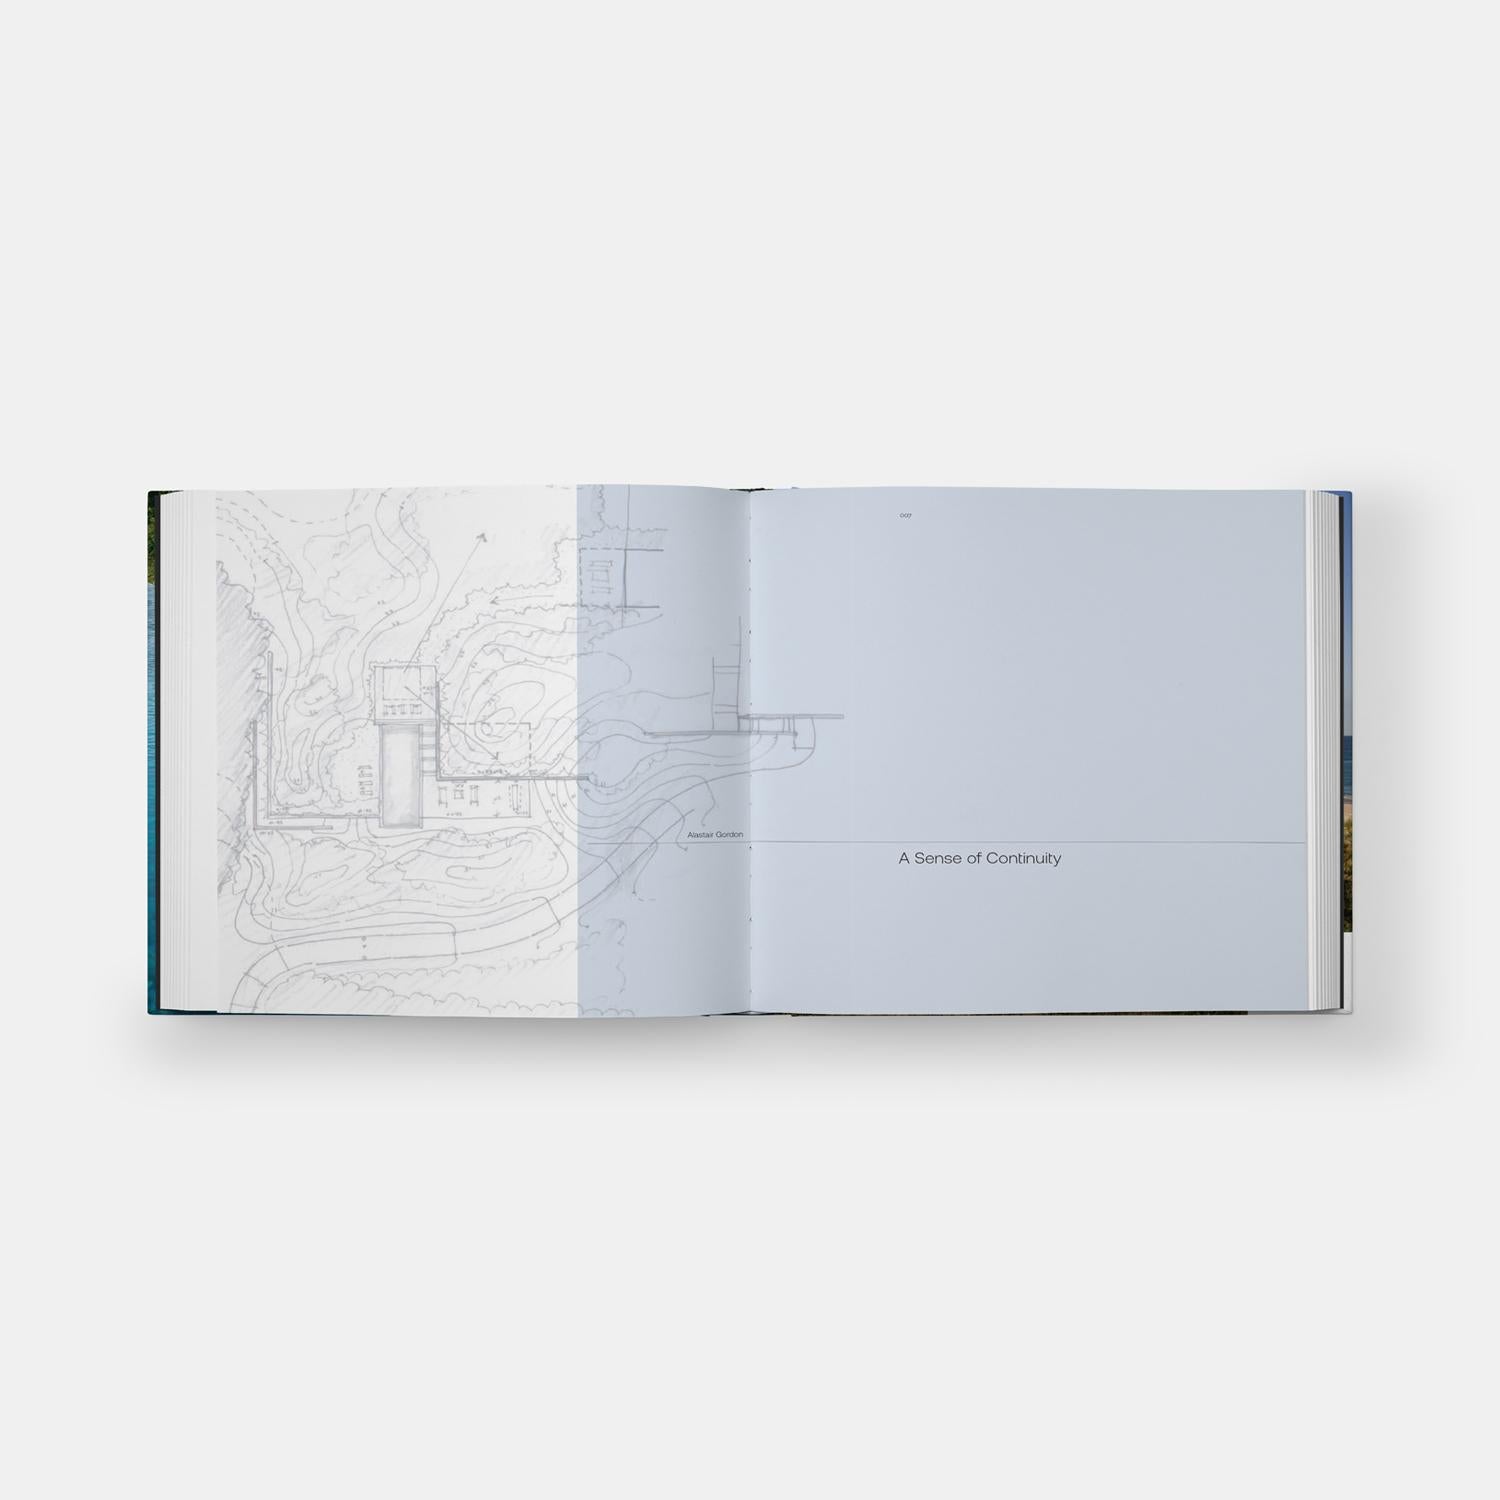 Première monographie à présenter le travail de LaGuardia Design Group, un cabinet d'architecture paysagère très réputé, spécialisé dans le design résidentiel contemporain dans les Hamptons.

Avec ses bureaux à Water Mill, LaGuardia Design Group